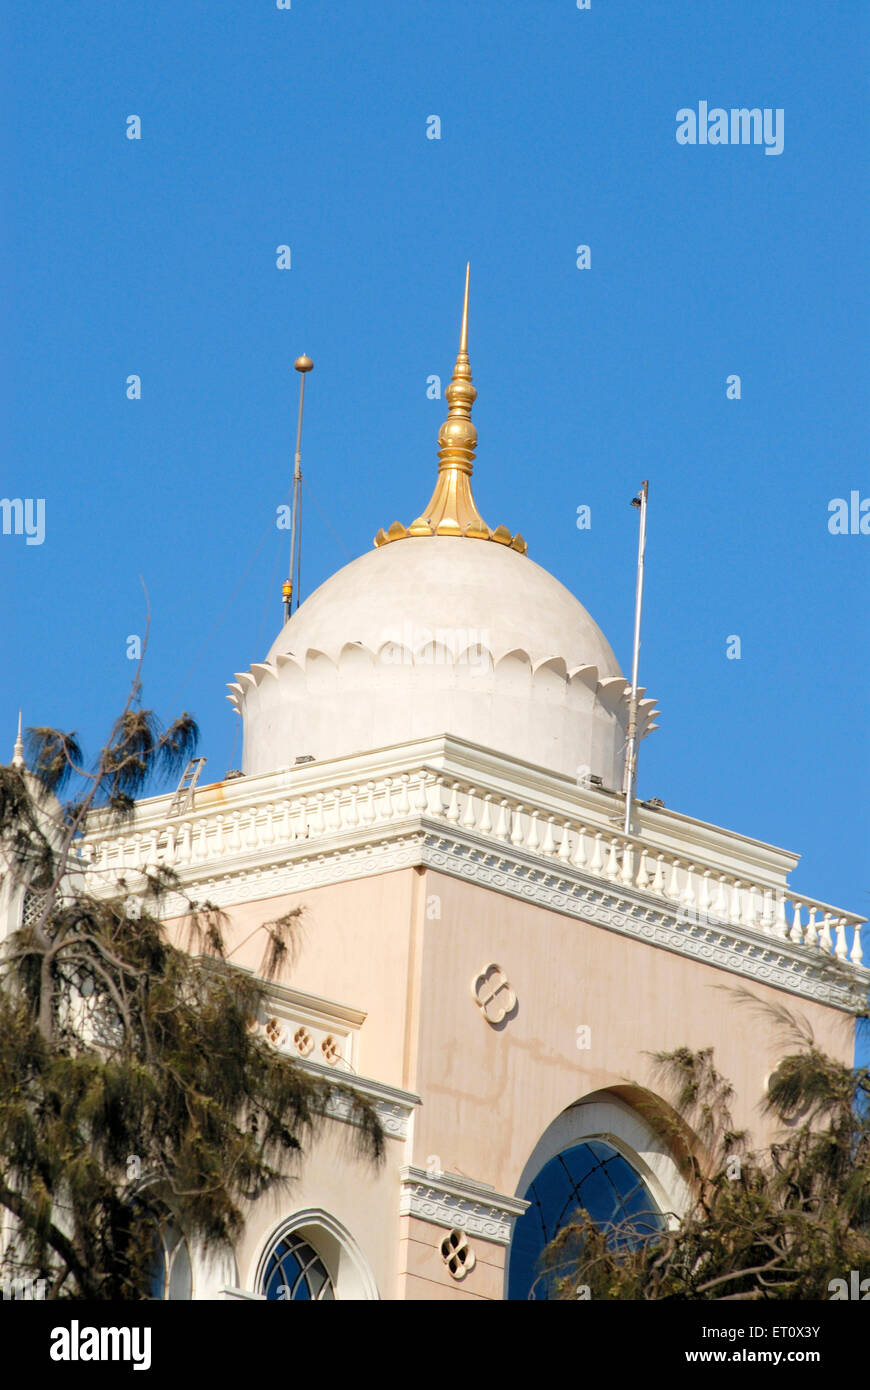 Dome with golden spire top of Saifee Hospital, Charni Road, Bombay, Mumbai, Maharashtra, India Stock Photo